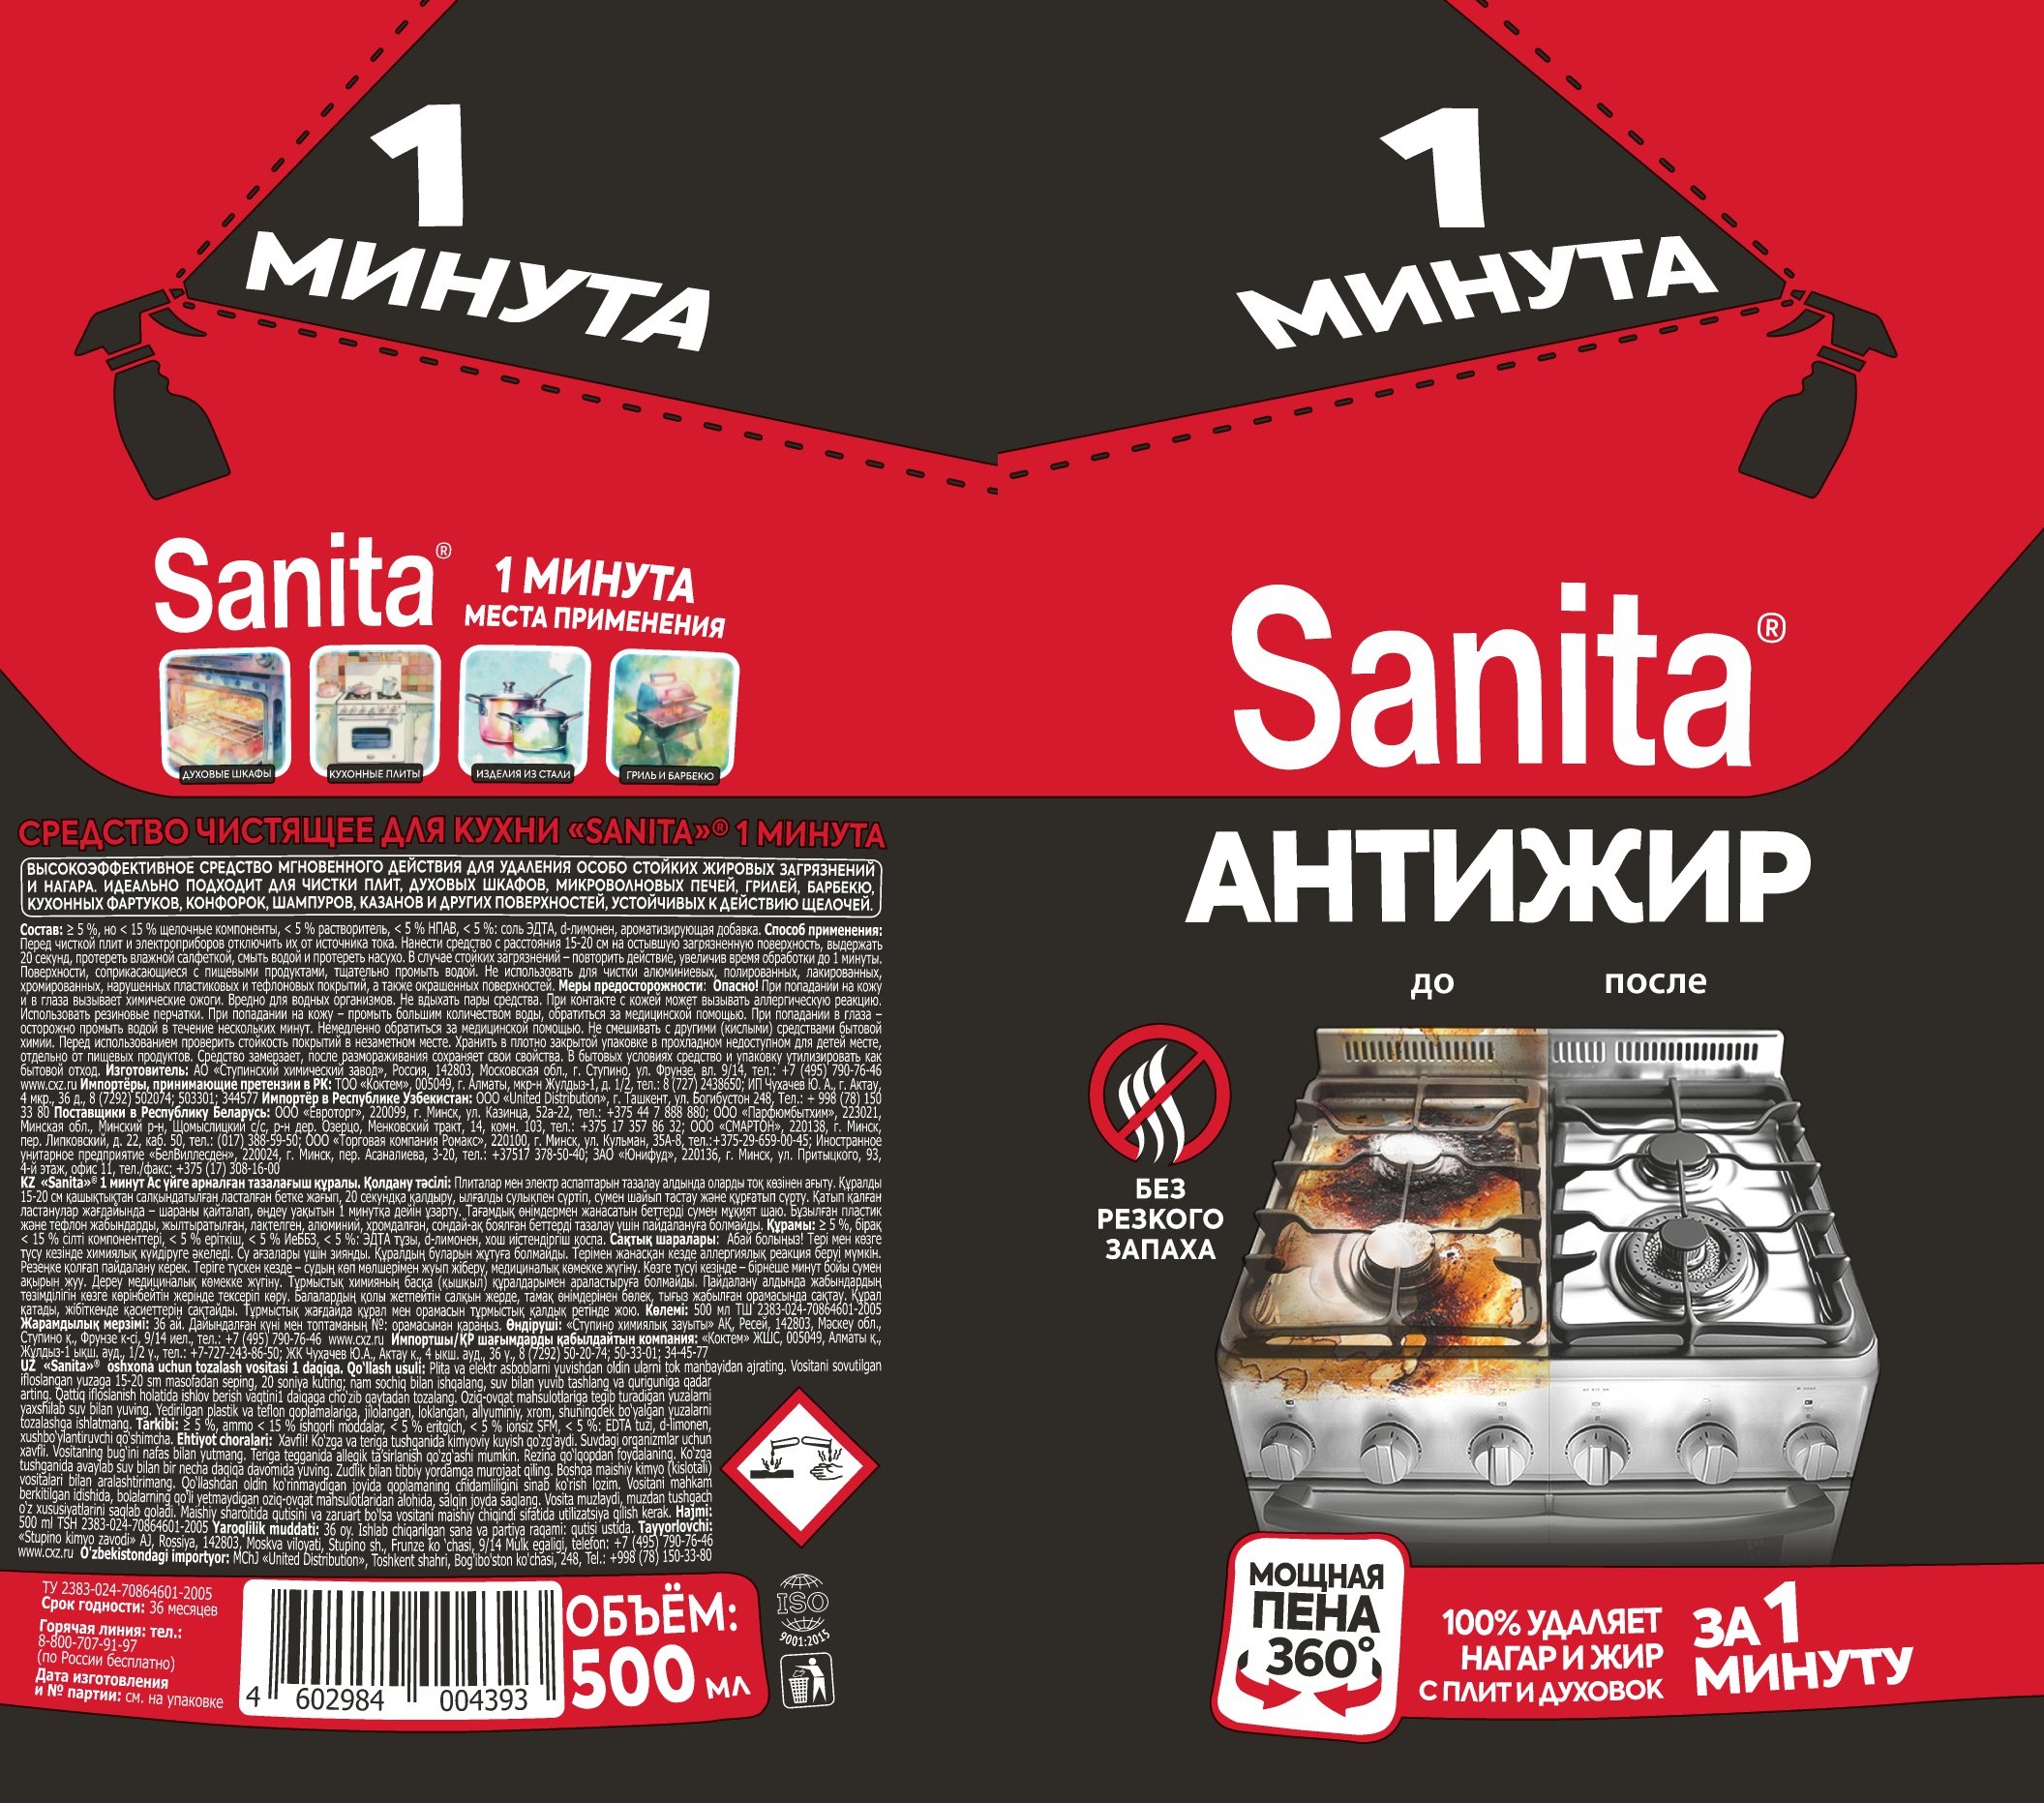 Спреи для уборки Sanita набор 4 шт - фото 8